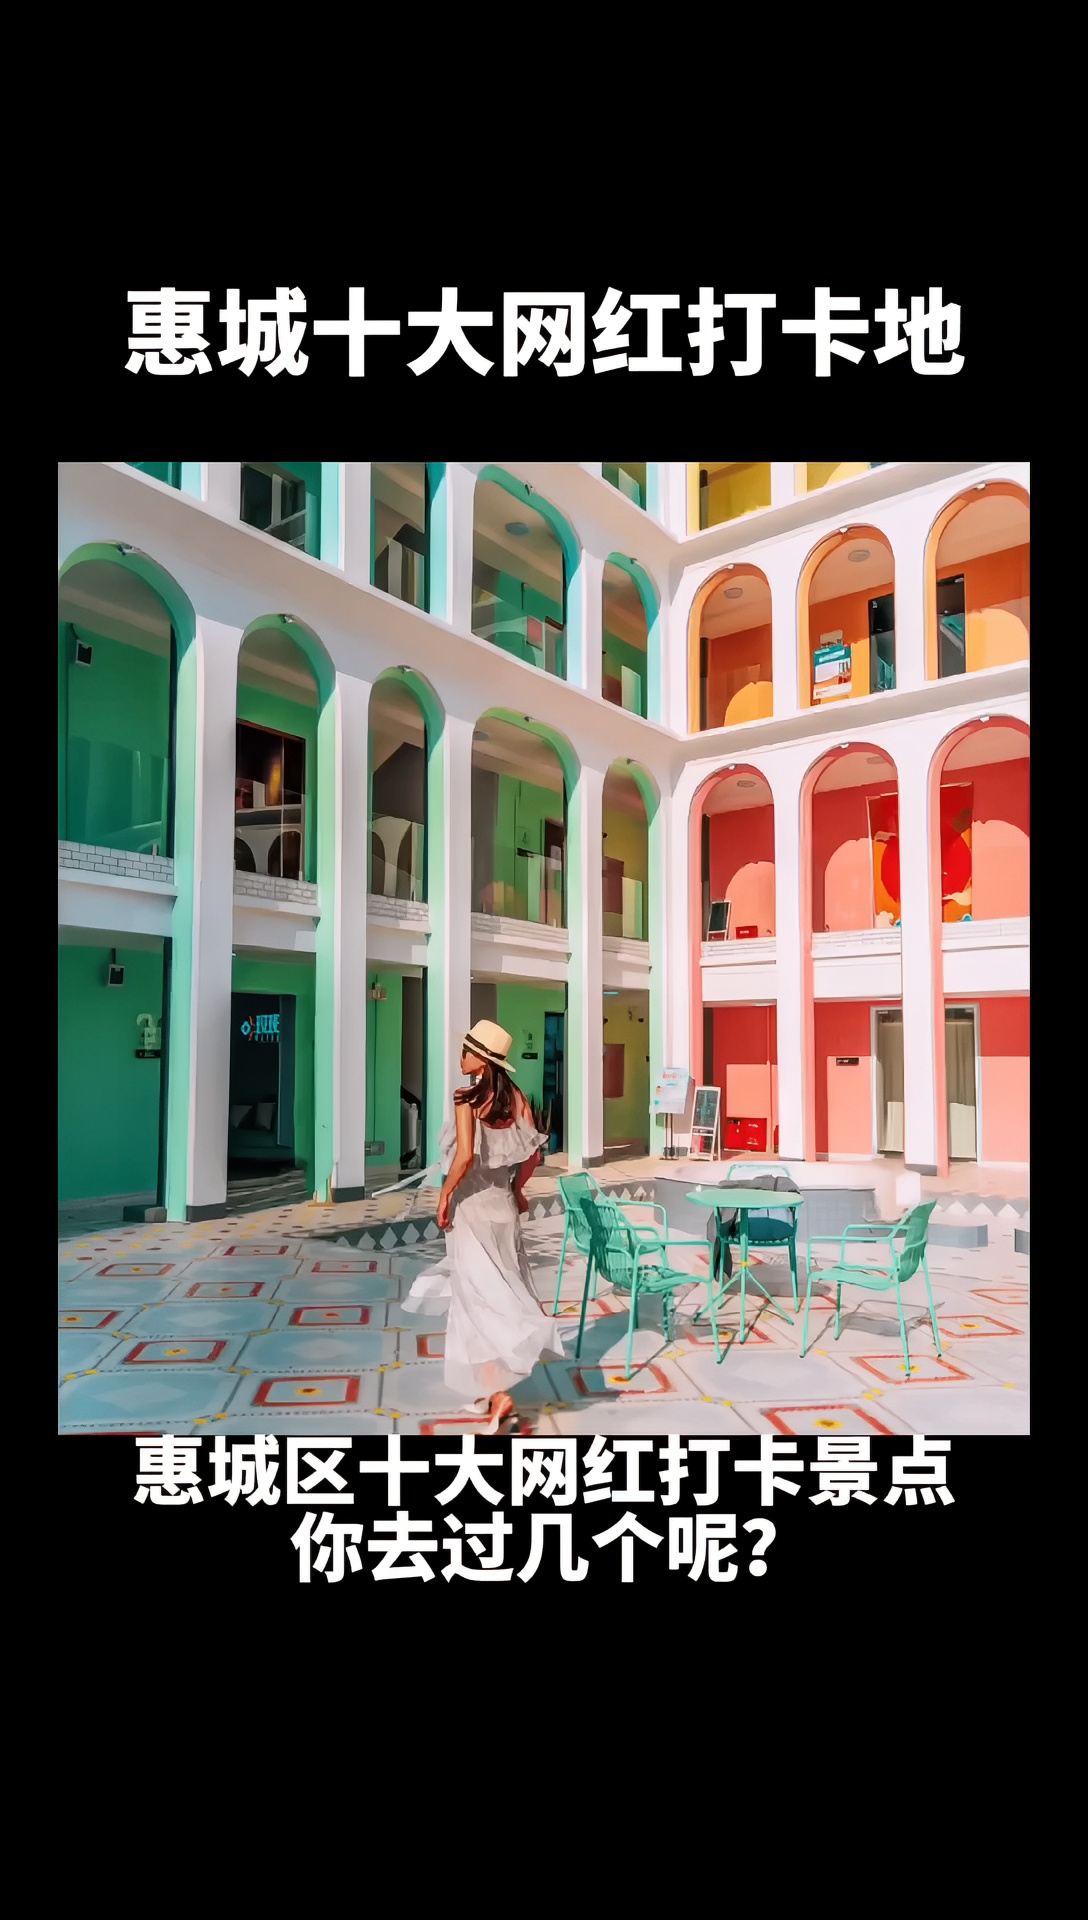 惠城区十大网红打卡景点，你最想去哪  个地方呢?欢迎评论呀! #惠州 #旅游#打卡收起